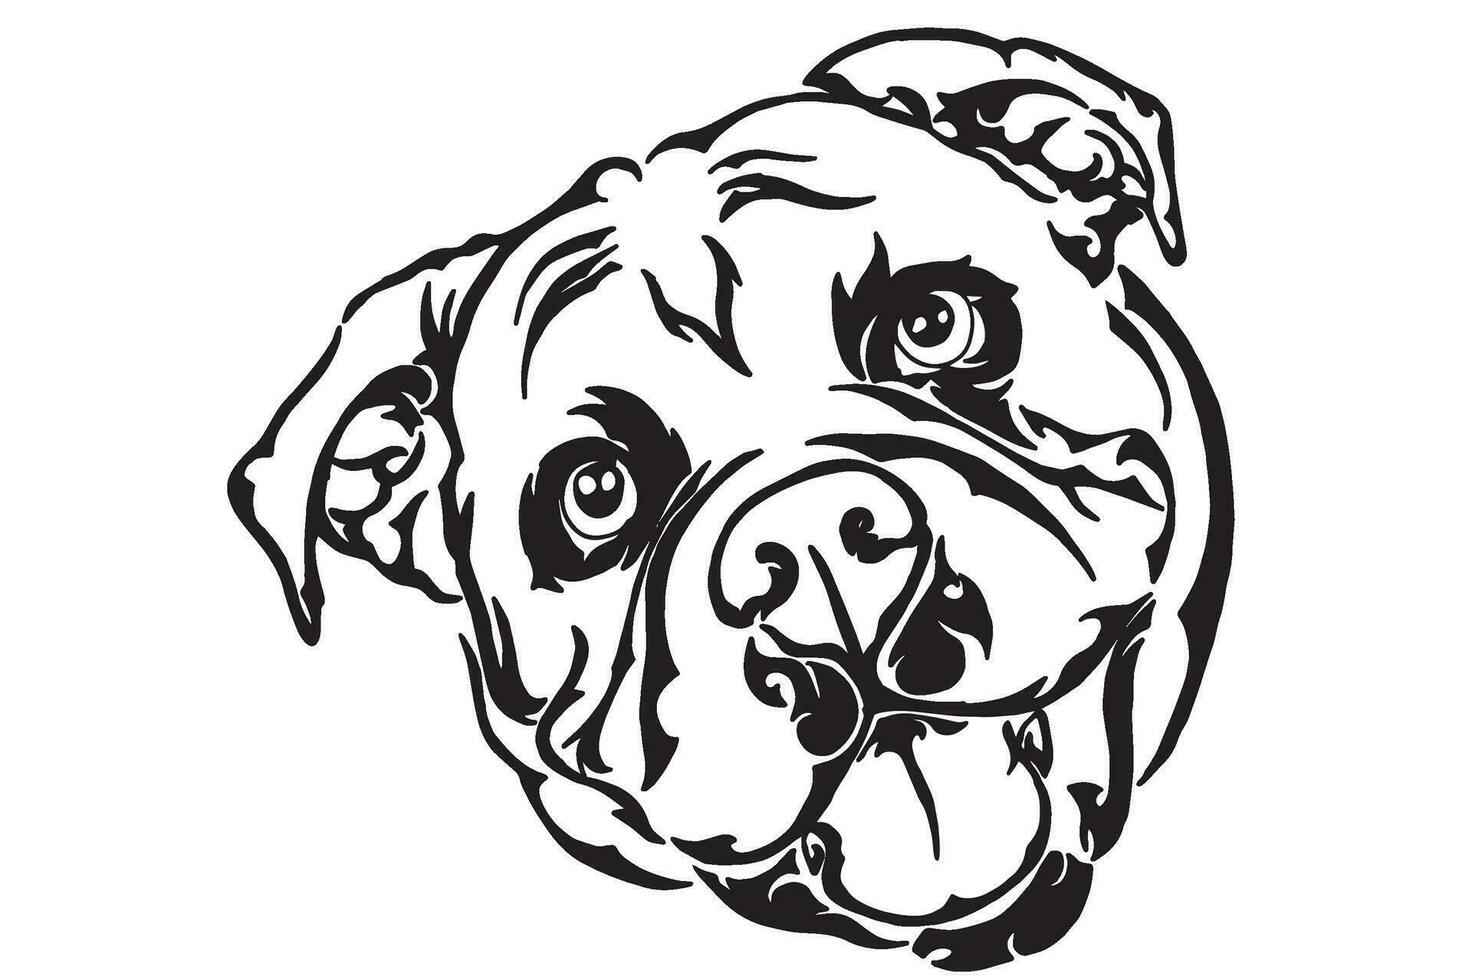 Dog - Bulldog Head Tattoo Design vector